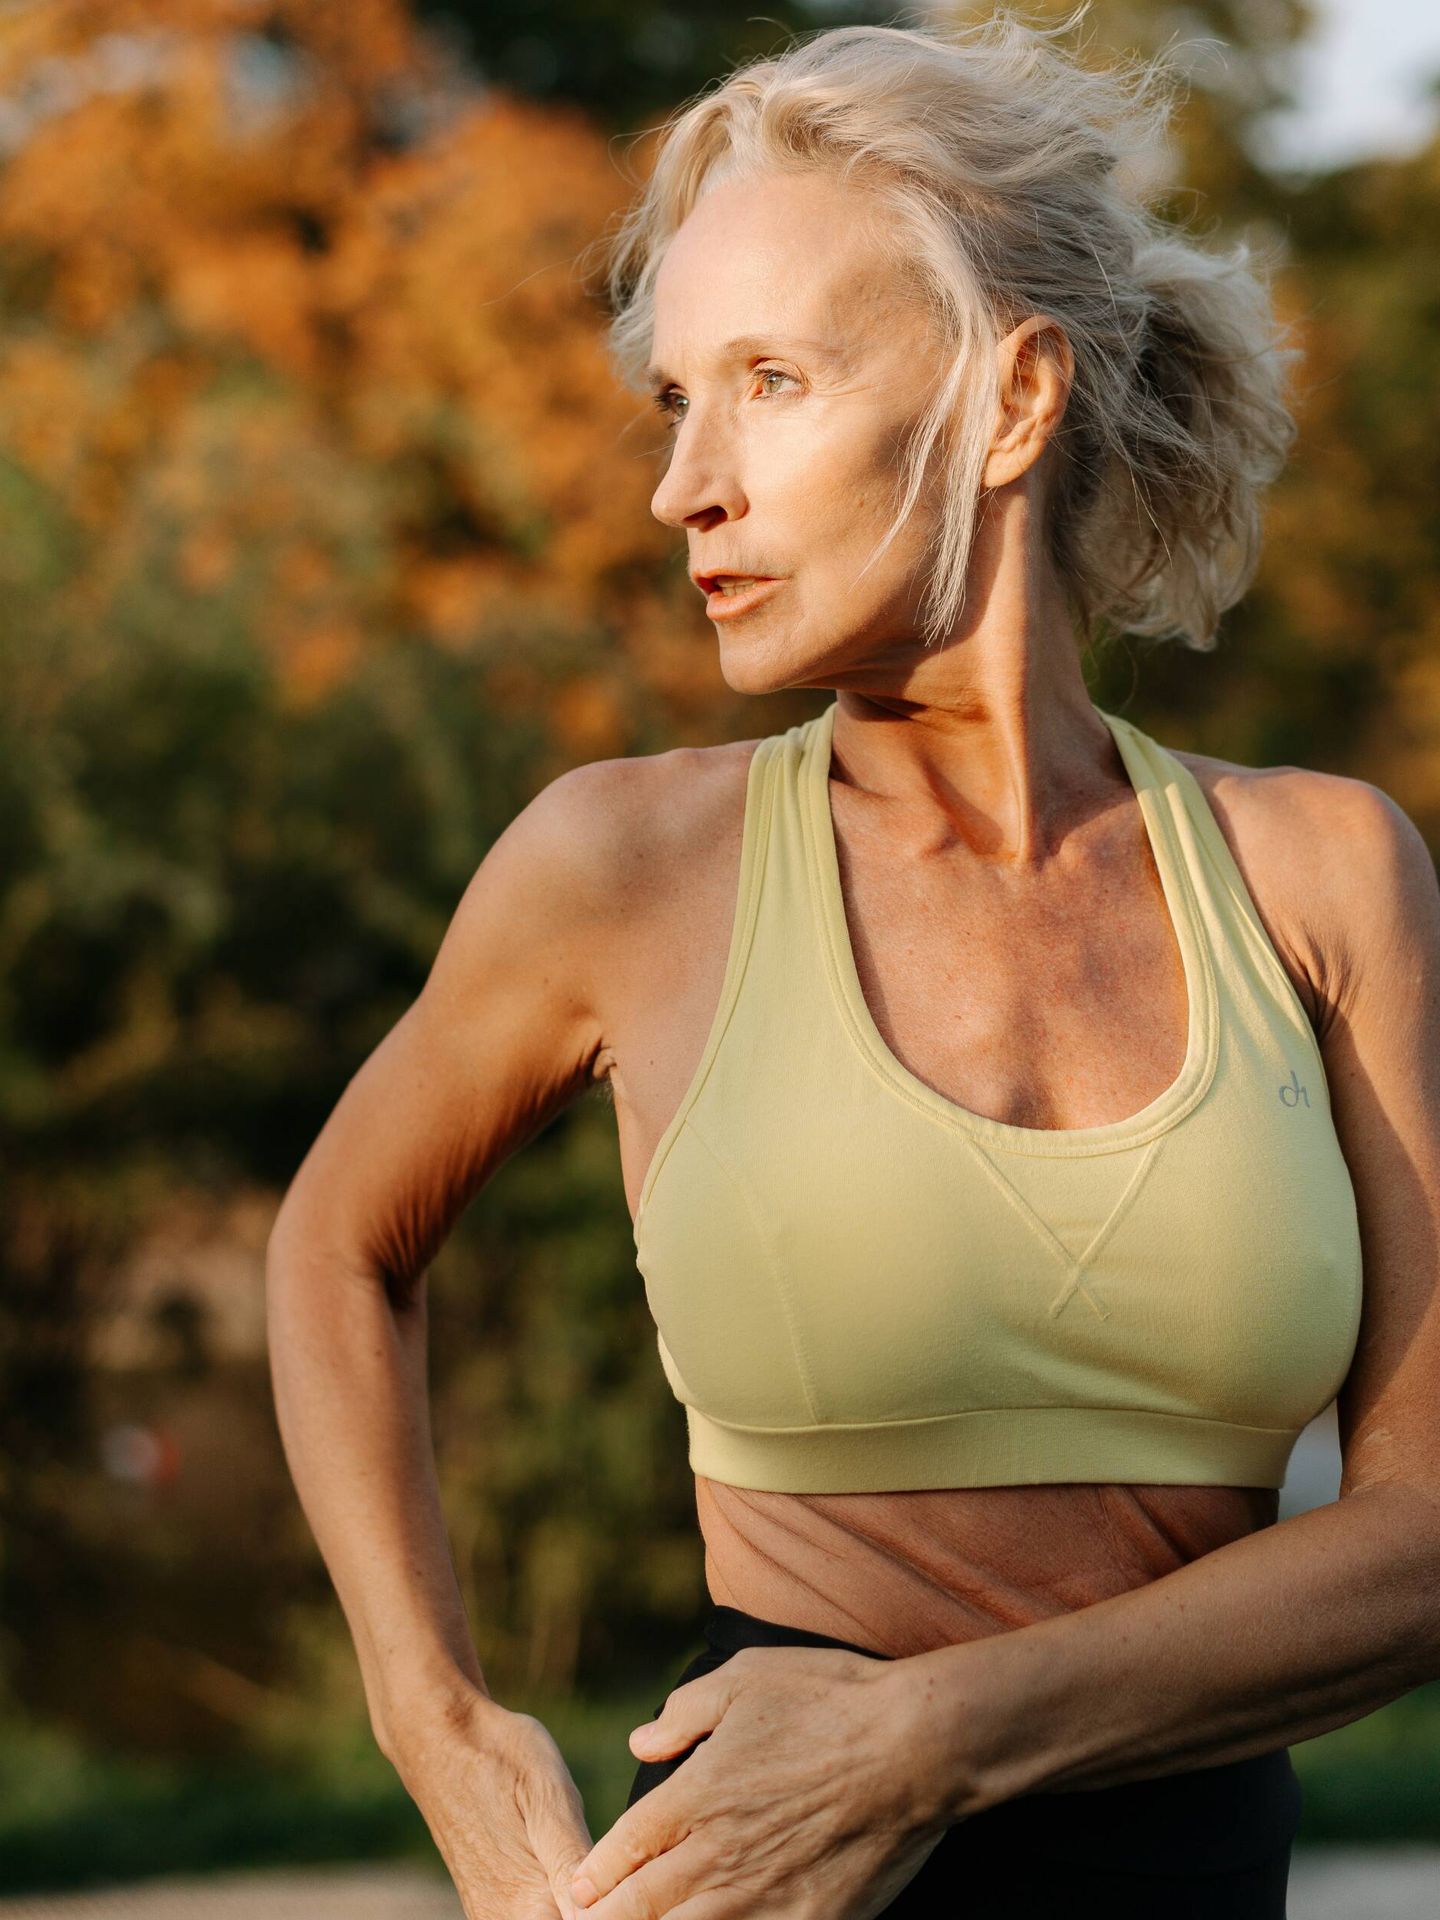 No dejes el deporte una vez hayas entrado en la menopausia. (Pexels)